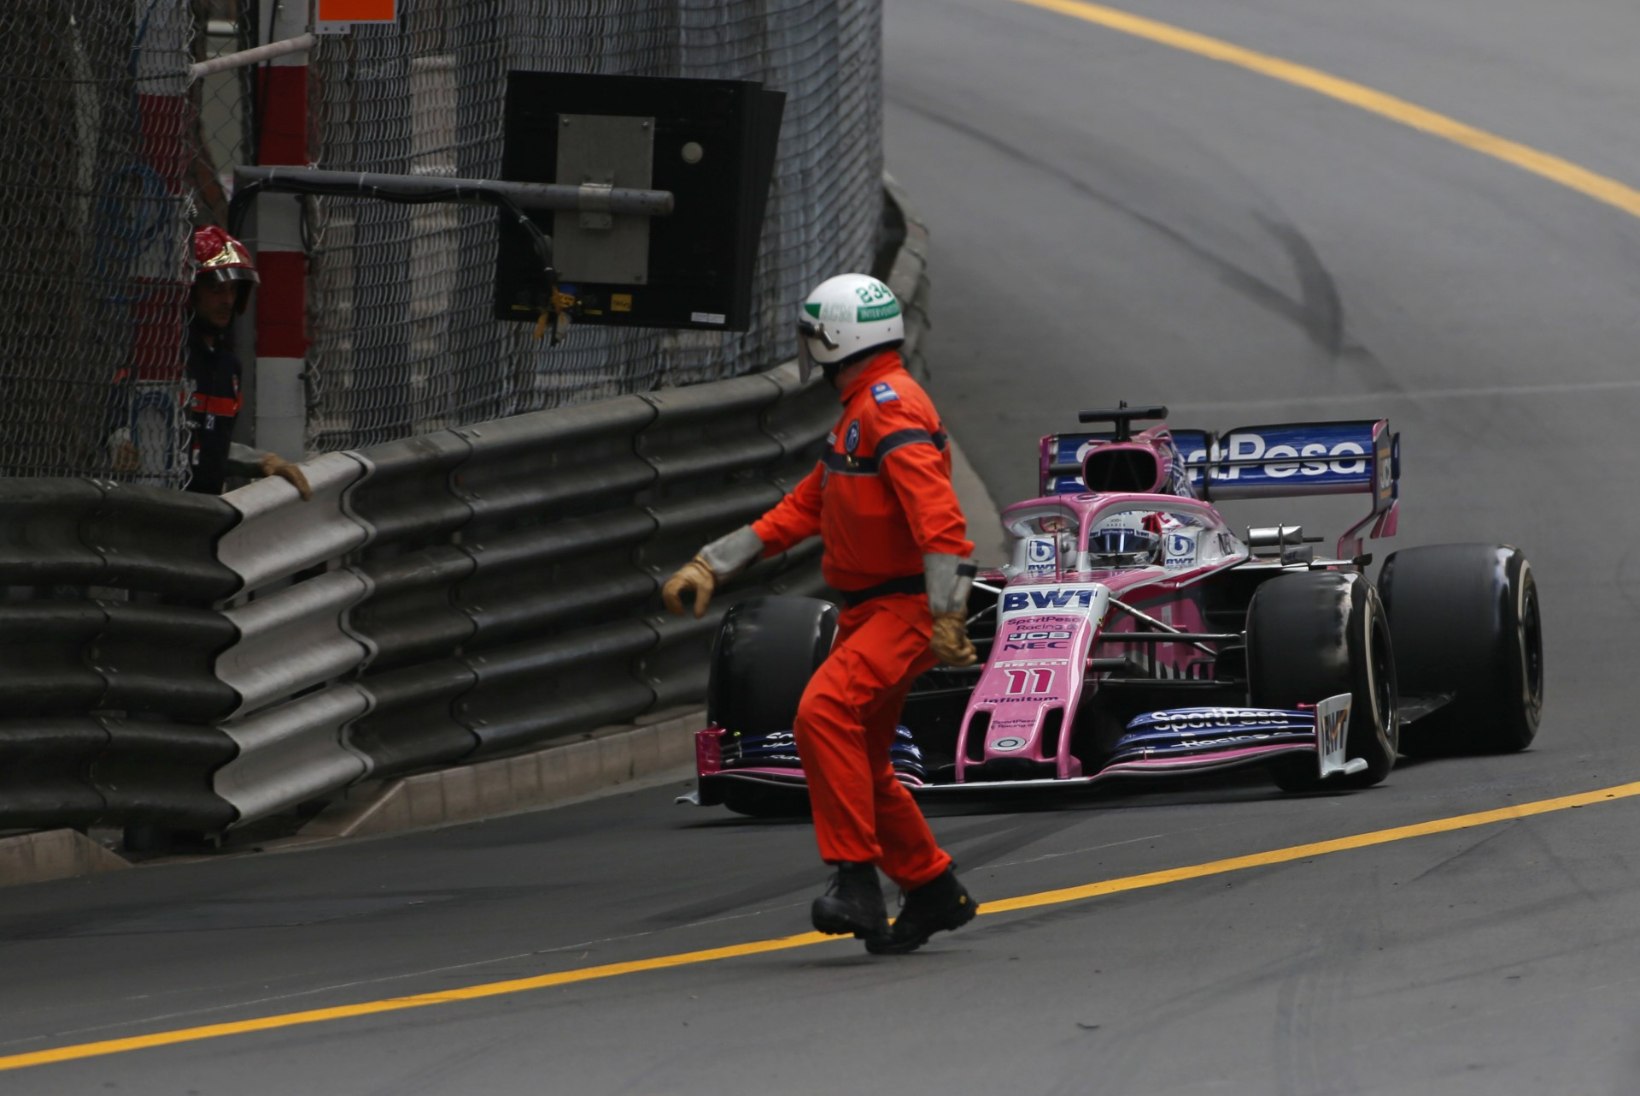 VIDEO | Monaco GP rajatöötajad tekitasid äreva olukorra. Piloot: ma oleks nad peaaegu surnuks sõitnud